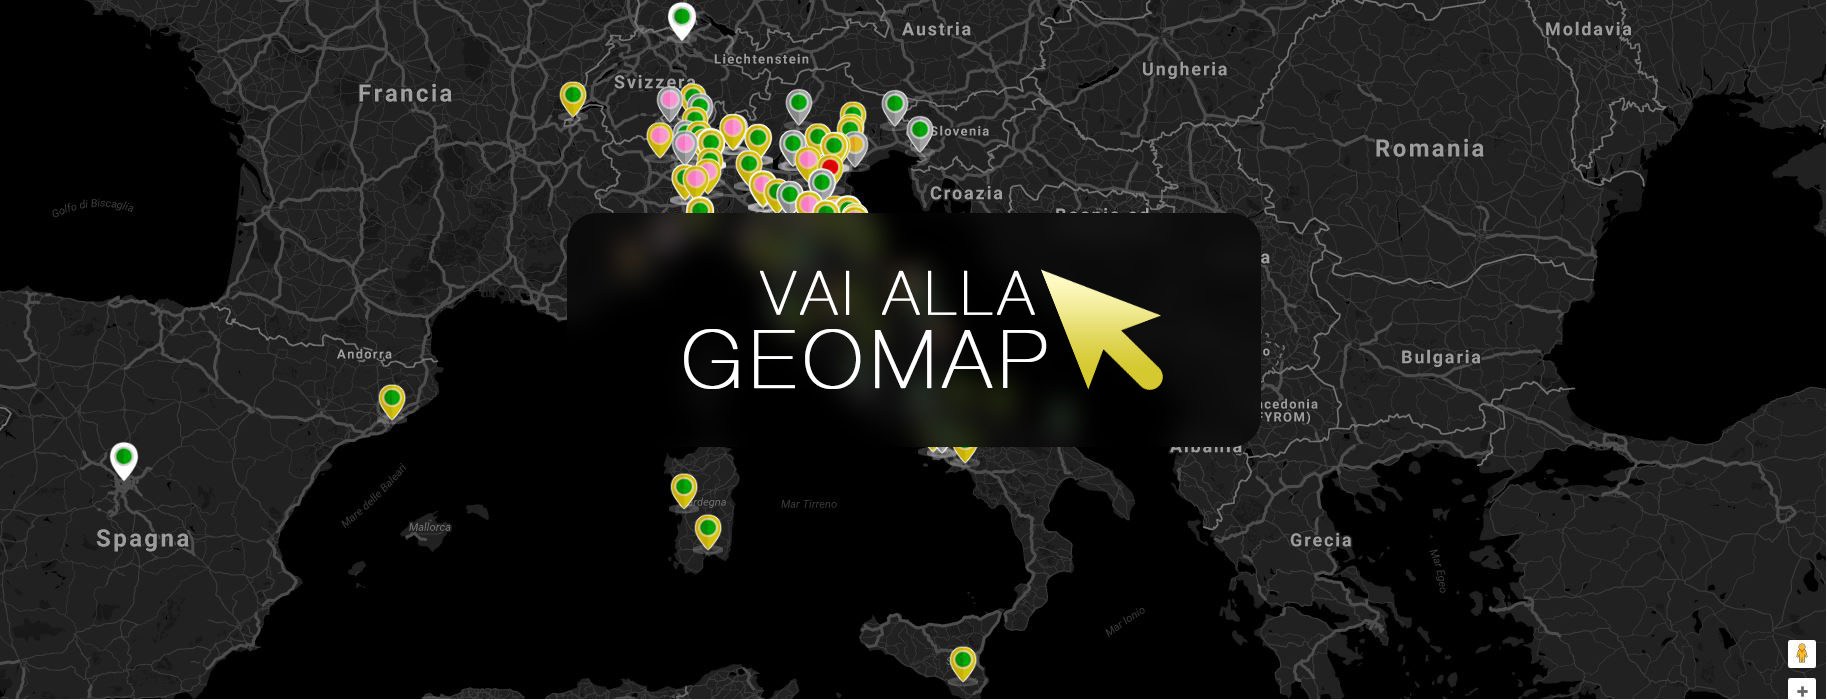 Guarda gli annunci a Viareggio nella mappa intervattiva